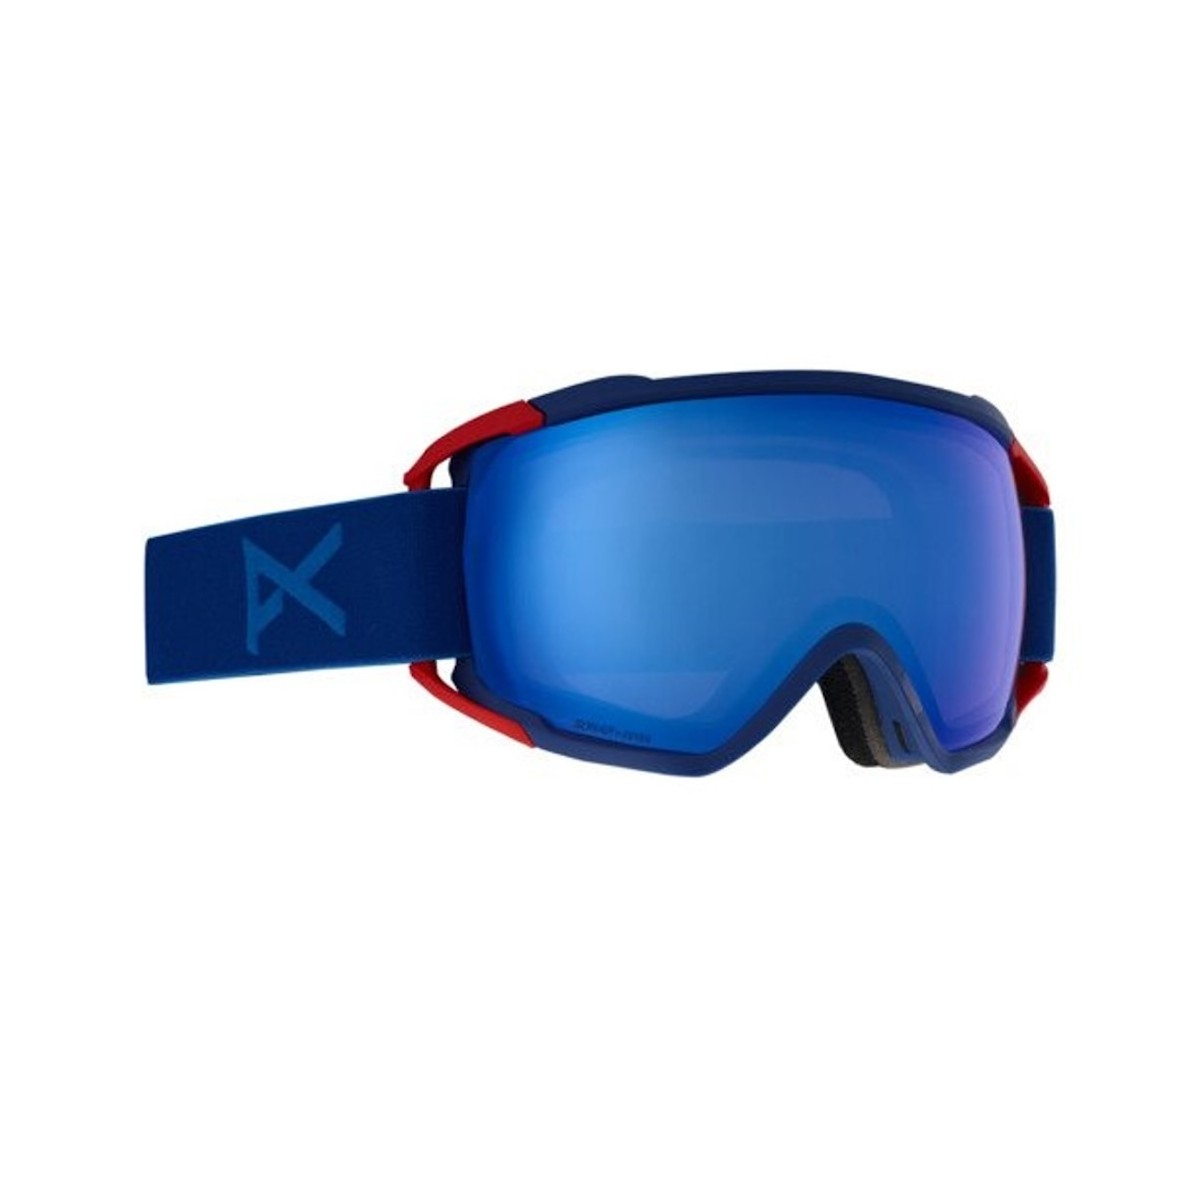 ANON CIRCUIT W/SONAR snow goggles - irrid blue